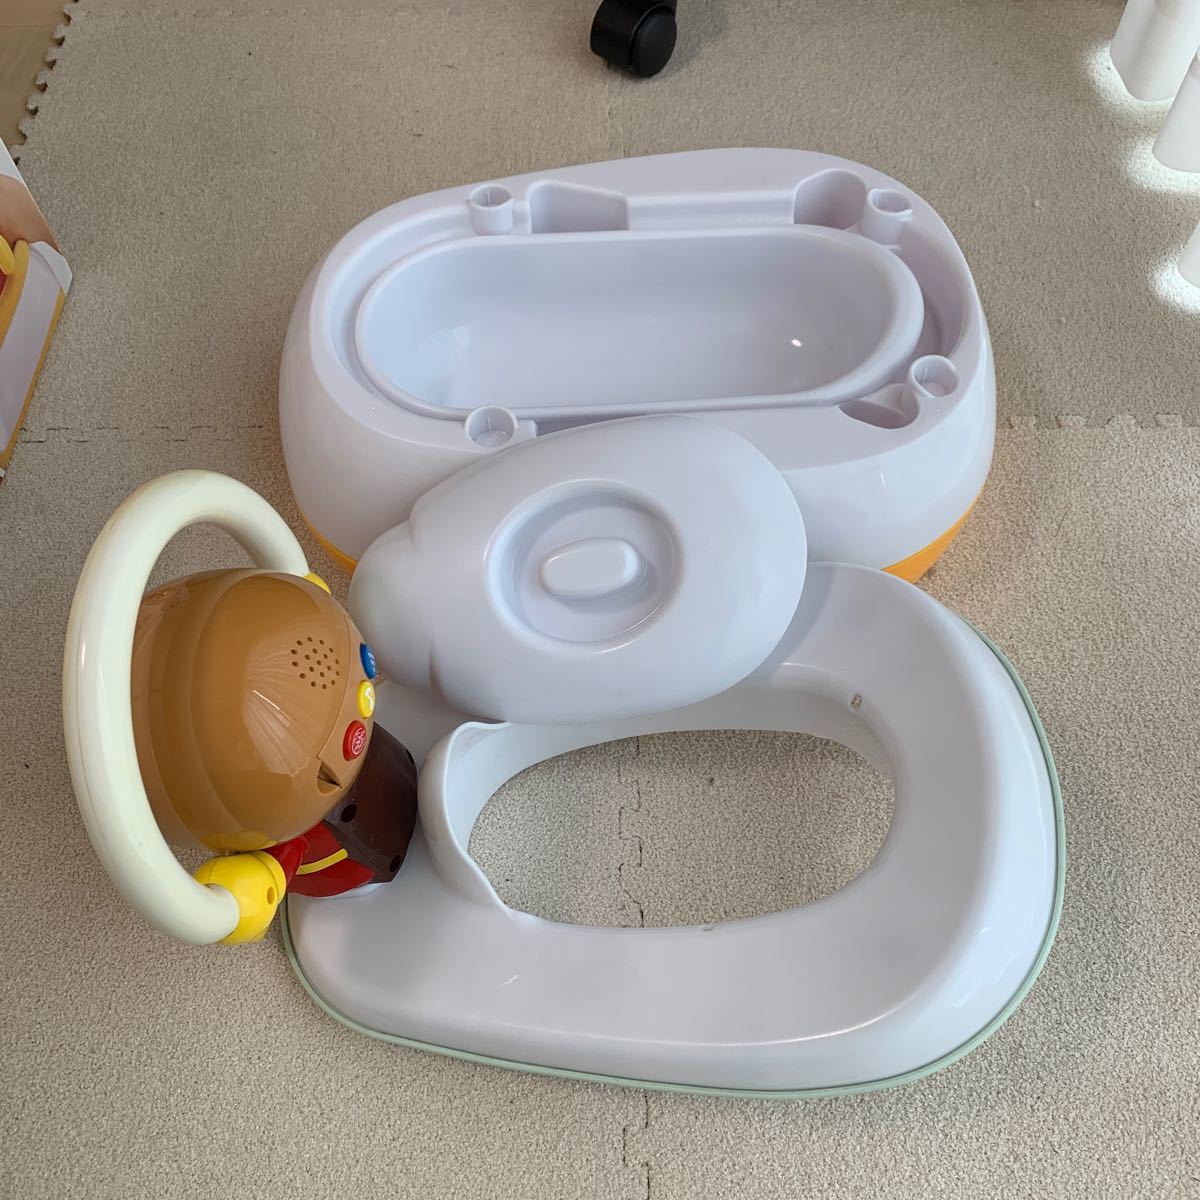 agatsuma Anpanman горшок P-01 Pinot chioPINOCCHIO туалет тренировка o maru сиденье для унитаза детский для малышей baby б/у с дефектом 